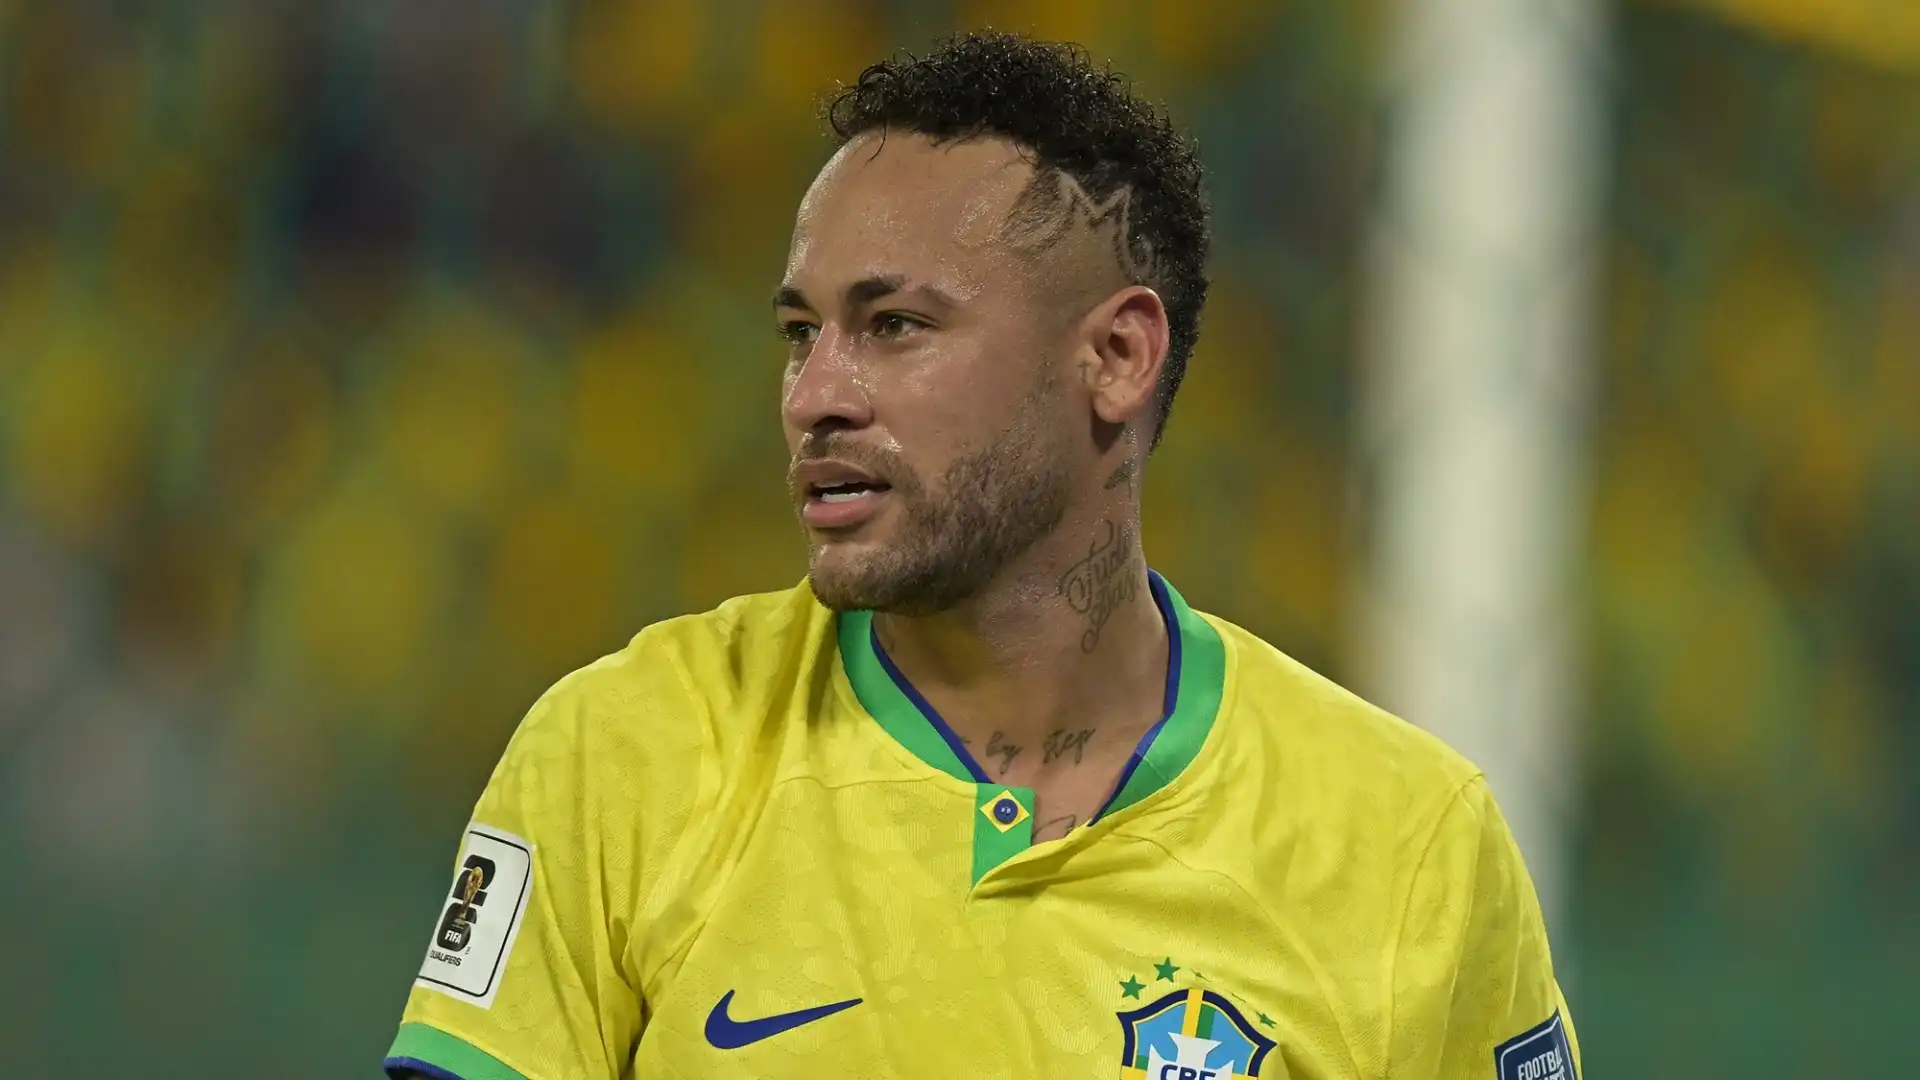 6 Neymar (Calcio): stipendio $86M; sponsorizzazioni 	$35M. Totale $121M